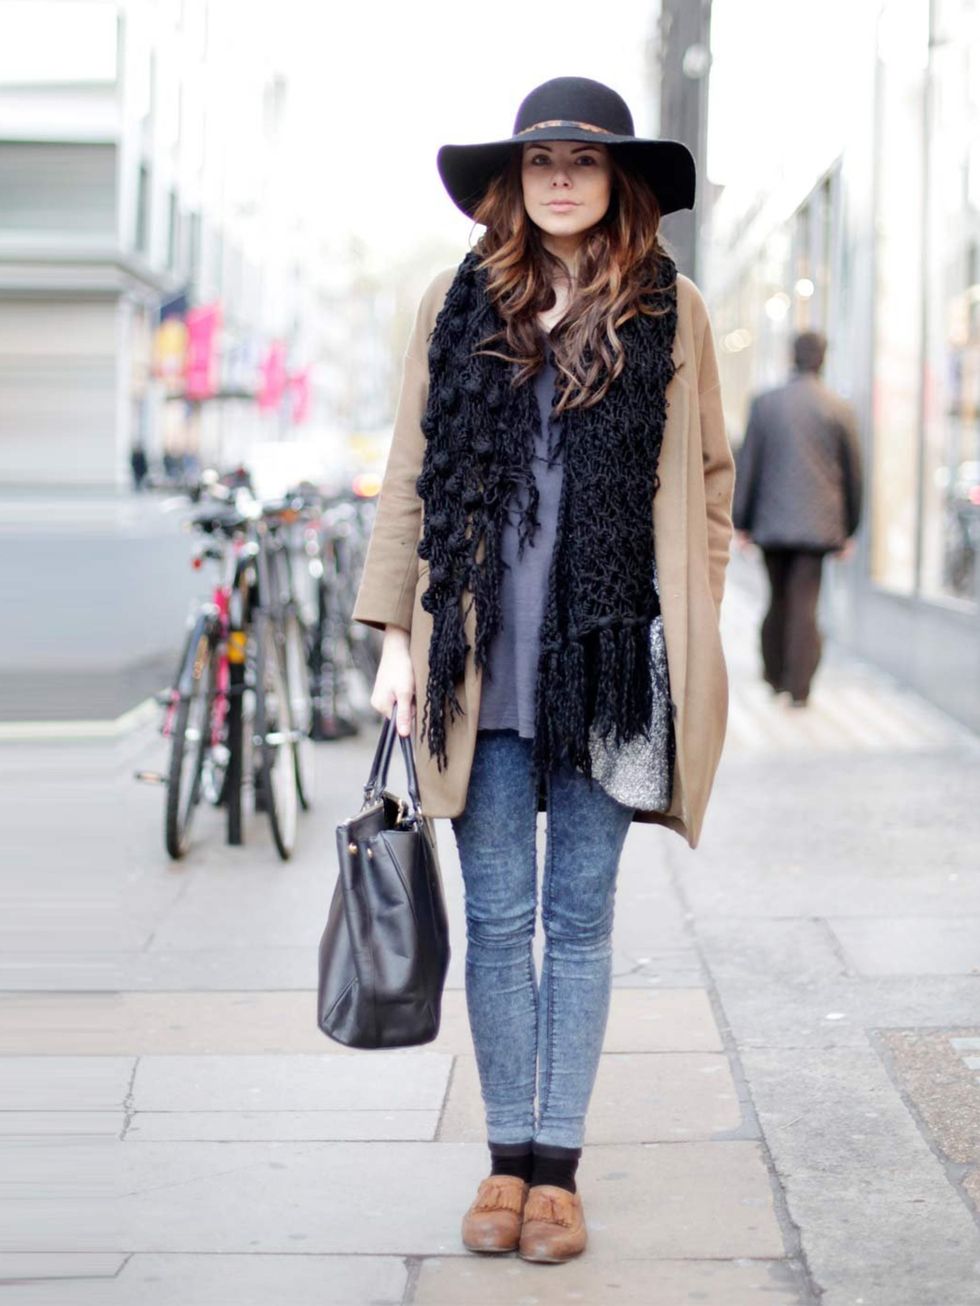 <p>Laura, Actress. Topshop jacket, boyfriend's t-shirt, Topshop jeans, vintage shoes, Asda hat, Prada bag.</p>